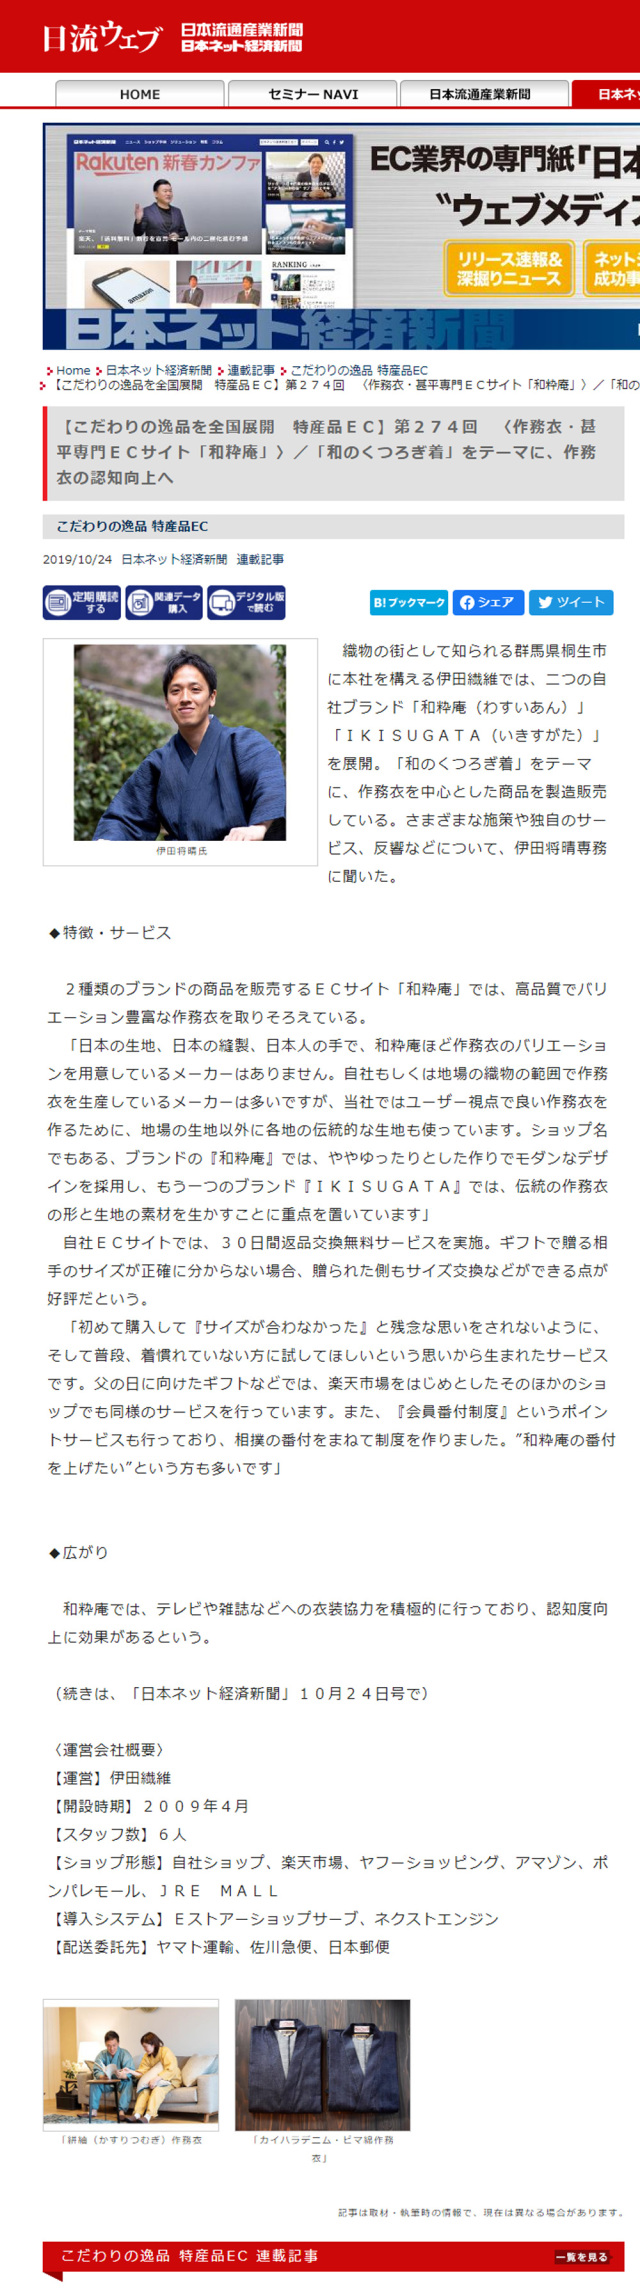 【新聞】日本ネット経済新聞に和粋庵が取り上げられました